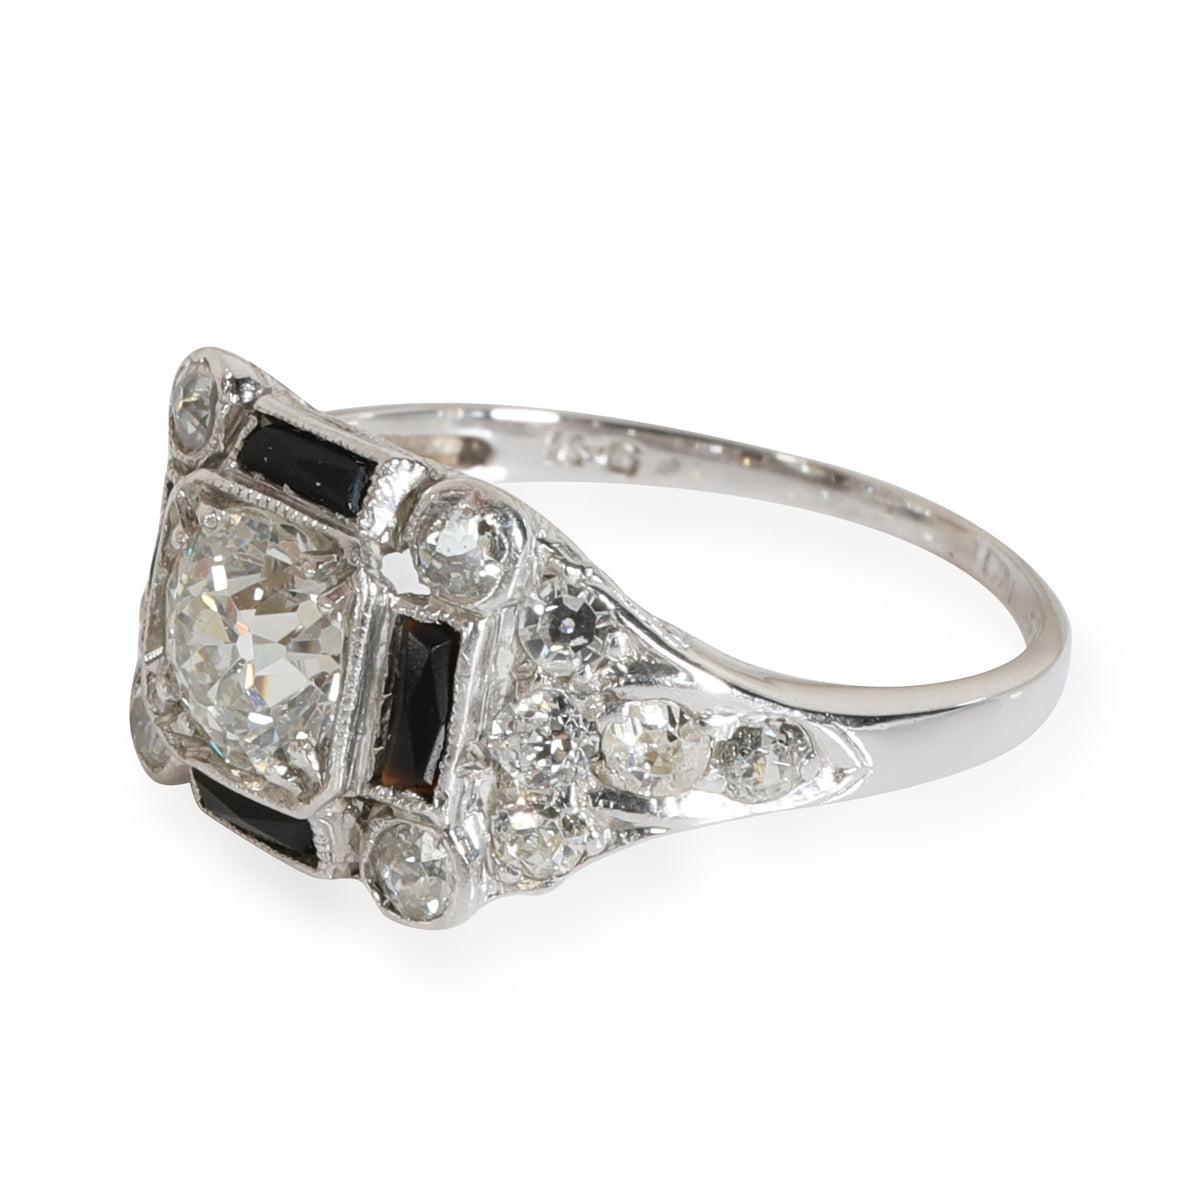 Antique Diamond Engagement Ring in 950 Platinum J VS2 1.28 CTW